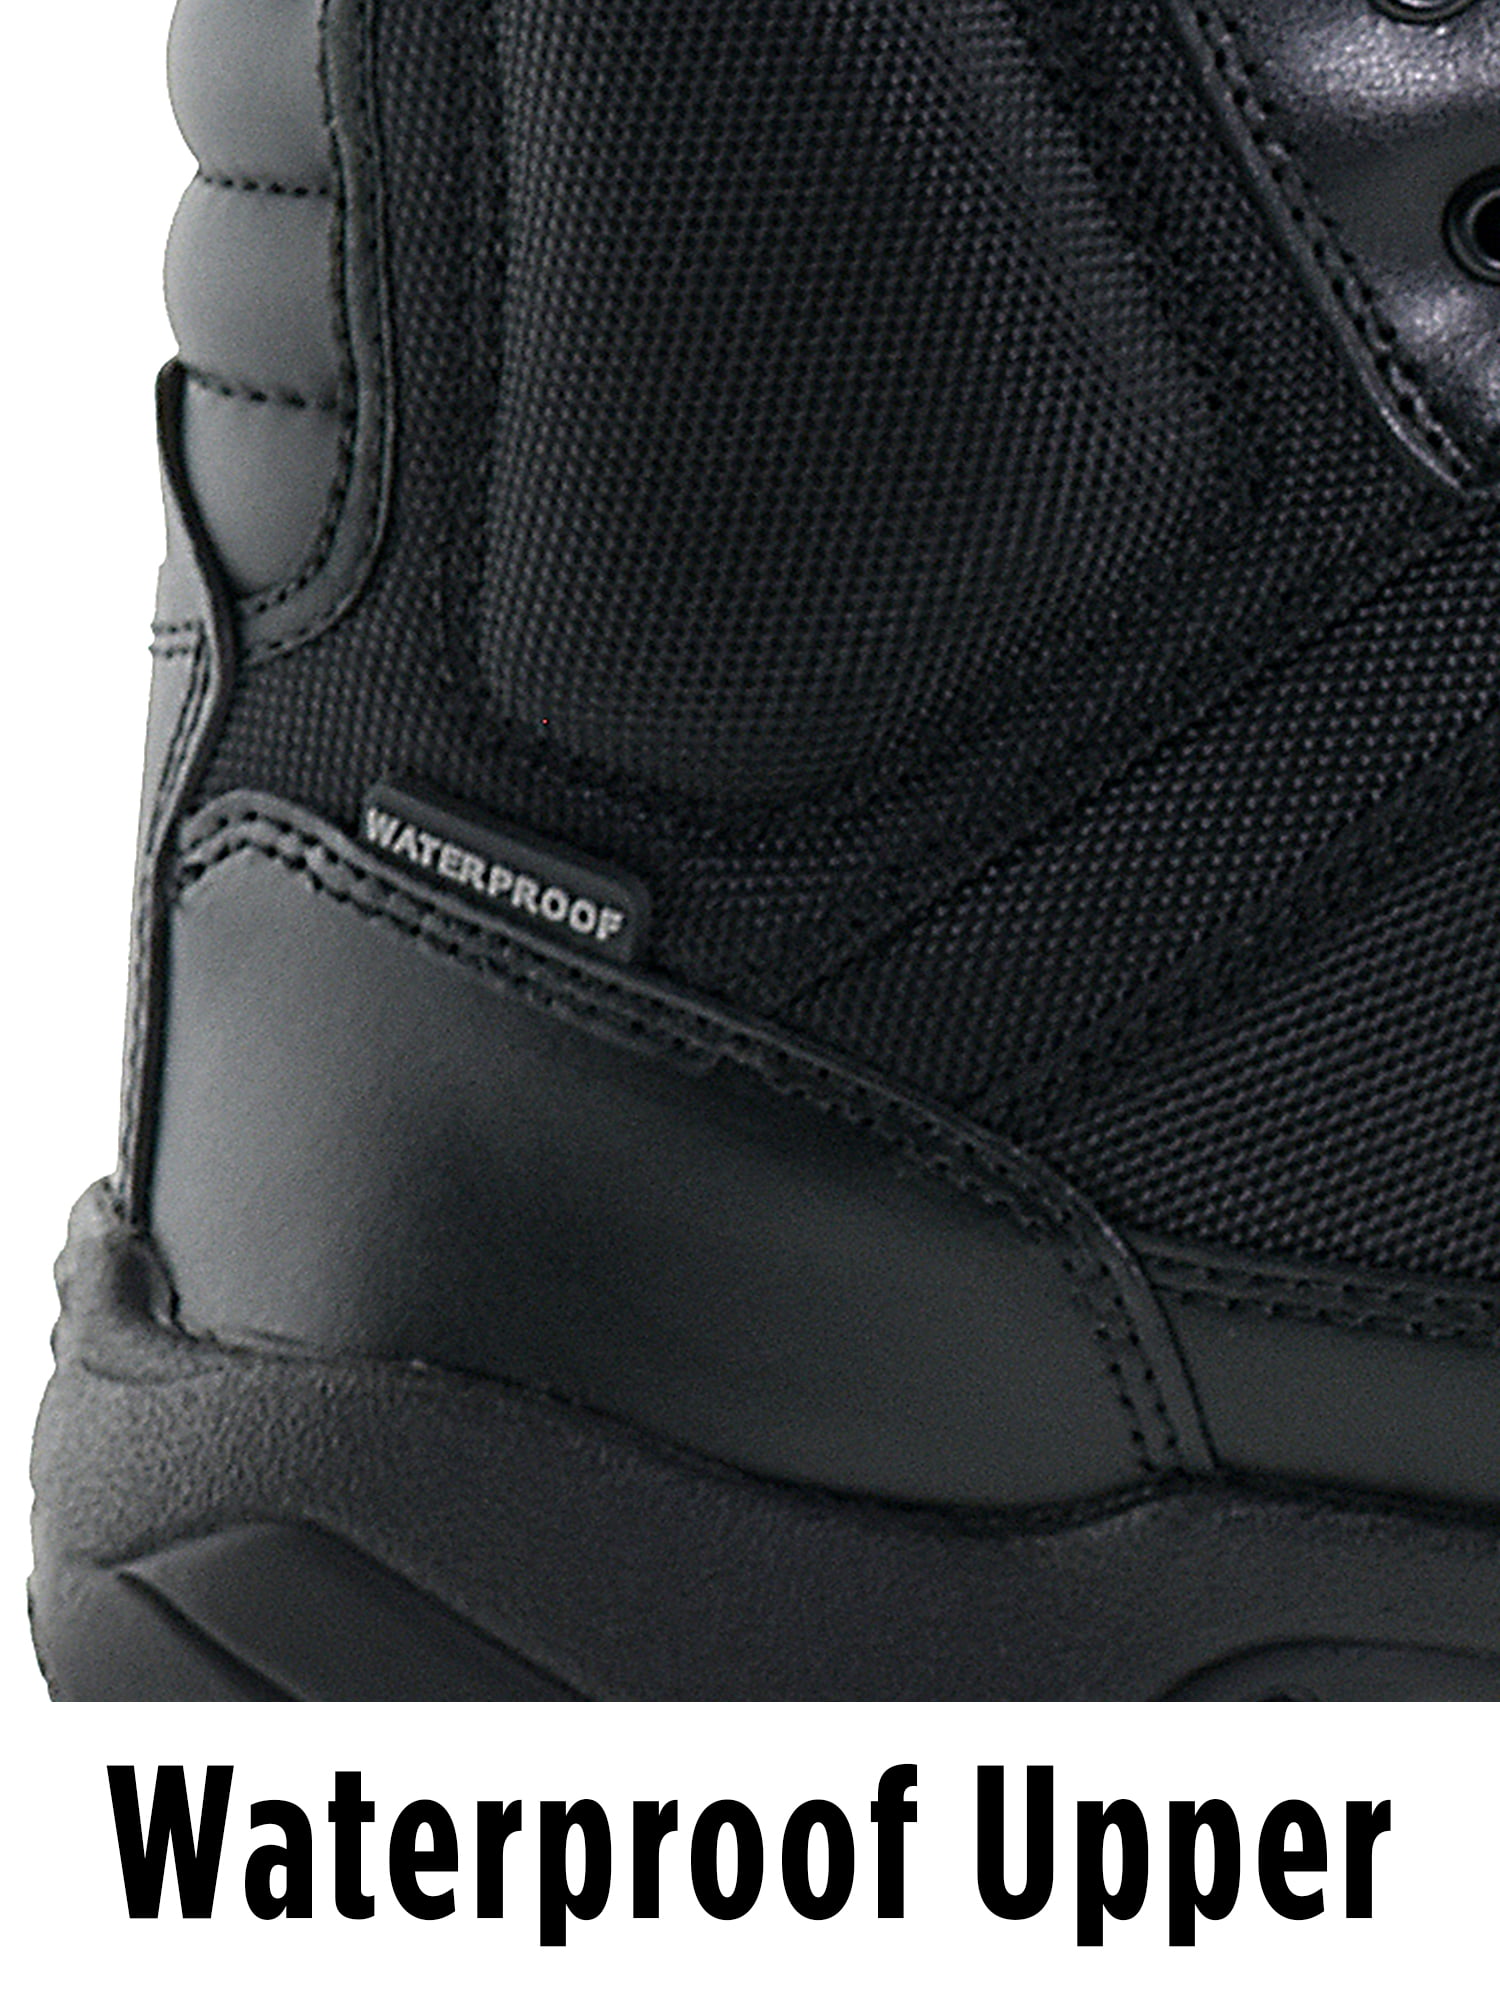 waterproof slip resistant boots walmart